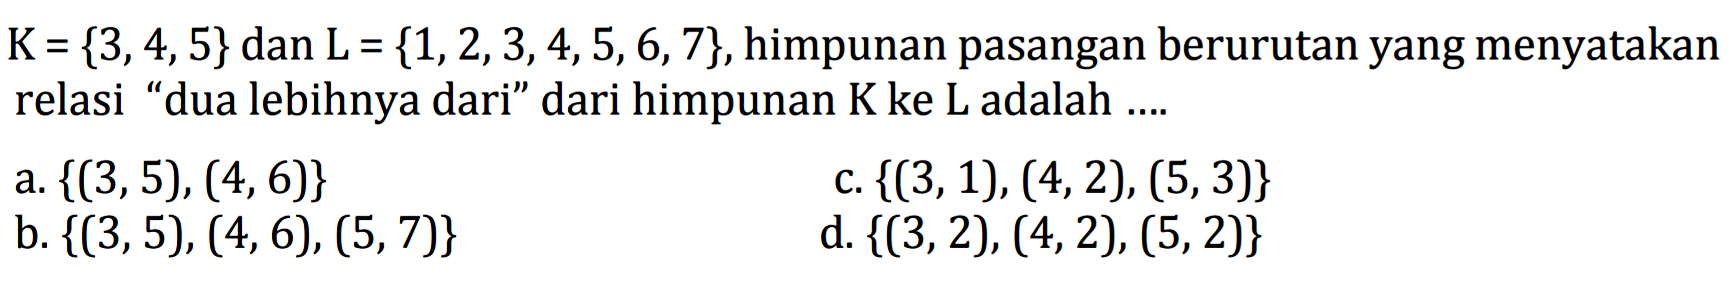 K= {3,4,5} dan L = {1,2, 3,4,5,6,7}, himpunan pasangan berurutan yang menyatakan relasi "dua lebihnya dari" dari himpunan K ke L adalah
 a. {(3,5), (4,6)} 
 b. {(3,5), (4,6), (5,7)}
 c. {({3,1), (4,2), (5,3)} 
 d. {(3,2), (4,2), (5,2)}